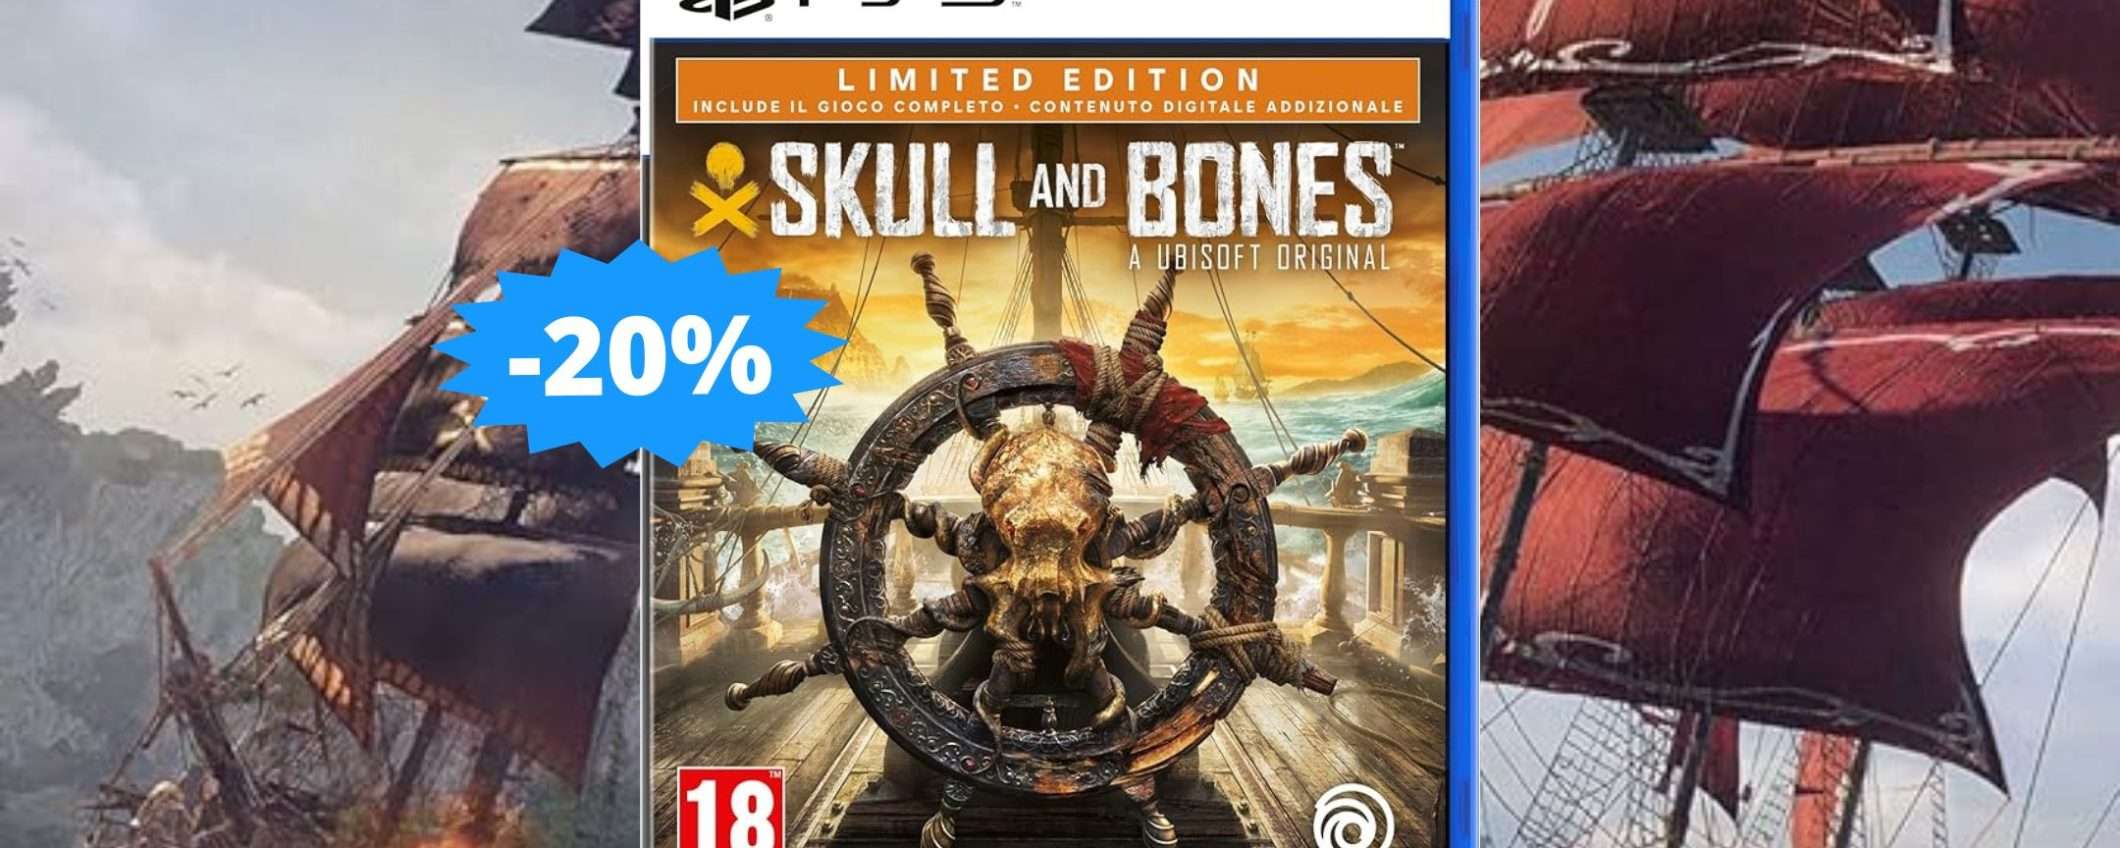 Skull & Bones per PS5: un'AVVENTURA imperdibile (-20%)